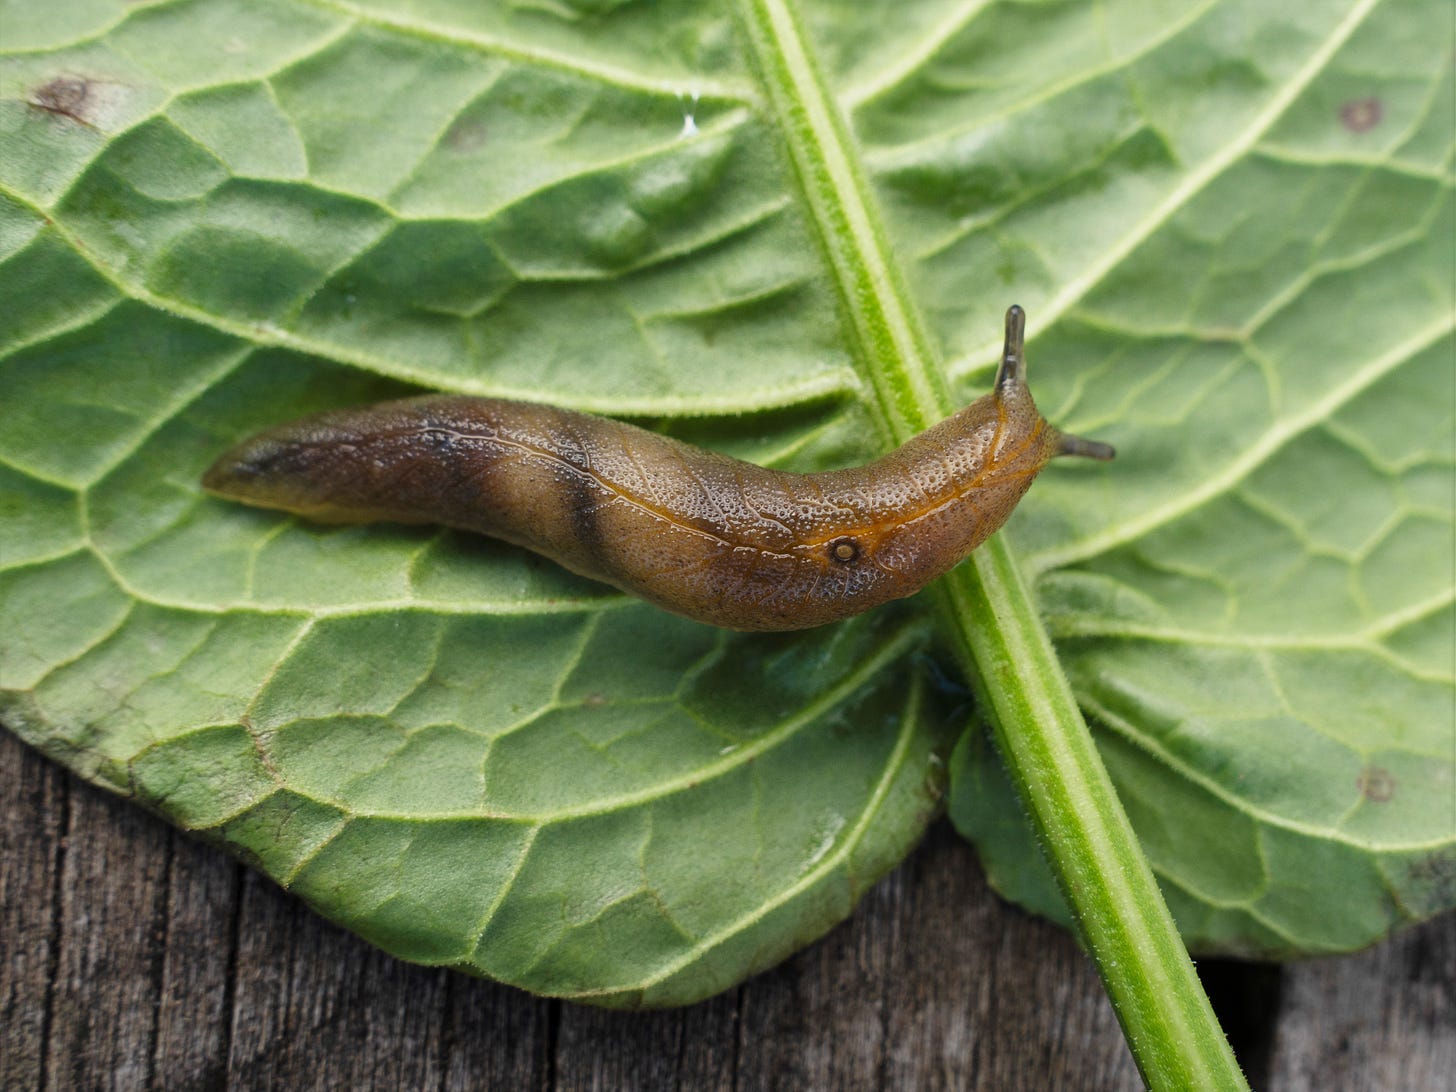 Leaf-veined slug (Athoracophoridae, native) on leaf